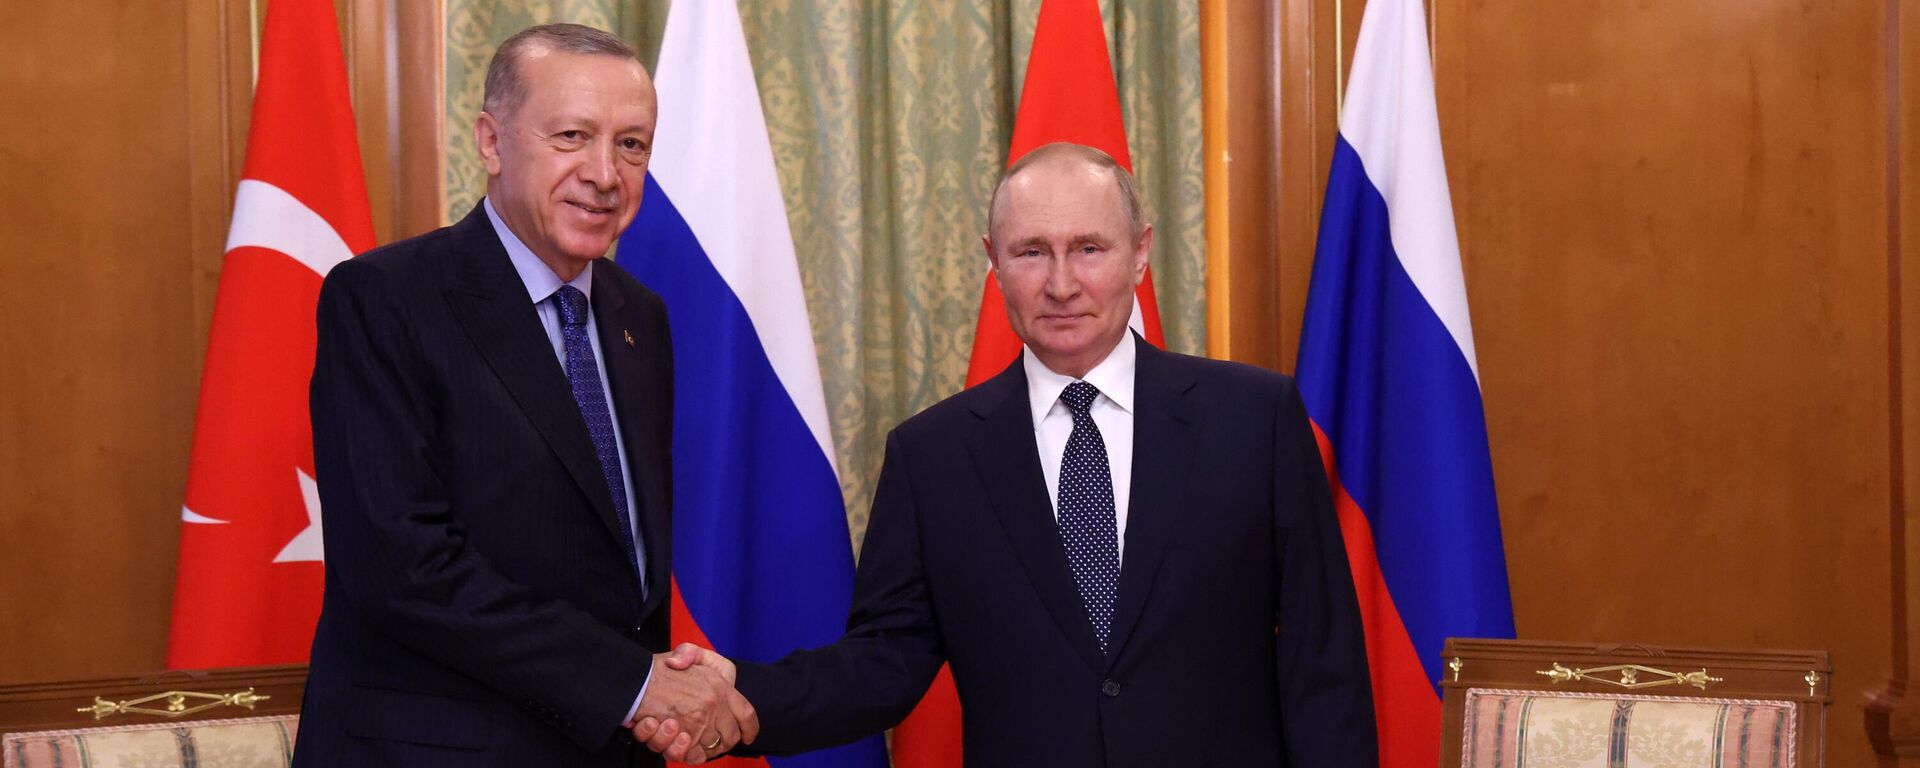 Президент РФ Владимир Путин и президент Турции Реджеп Тайип Эрдоган во время встречи в Сочи, 5 августа 2022 - Sputnik Латвия, 1920, 05.08.2022